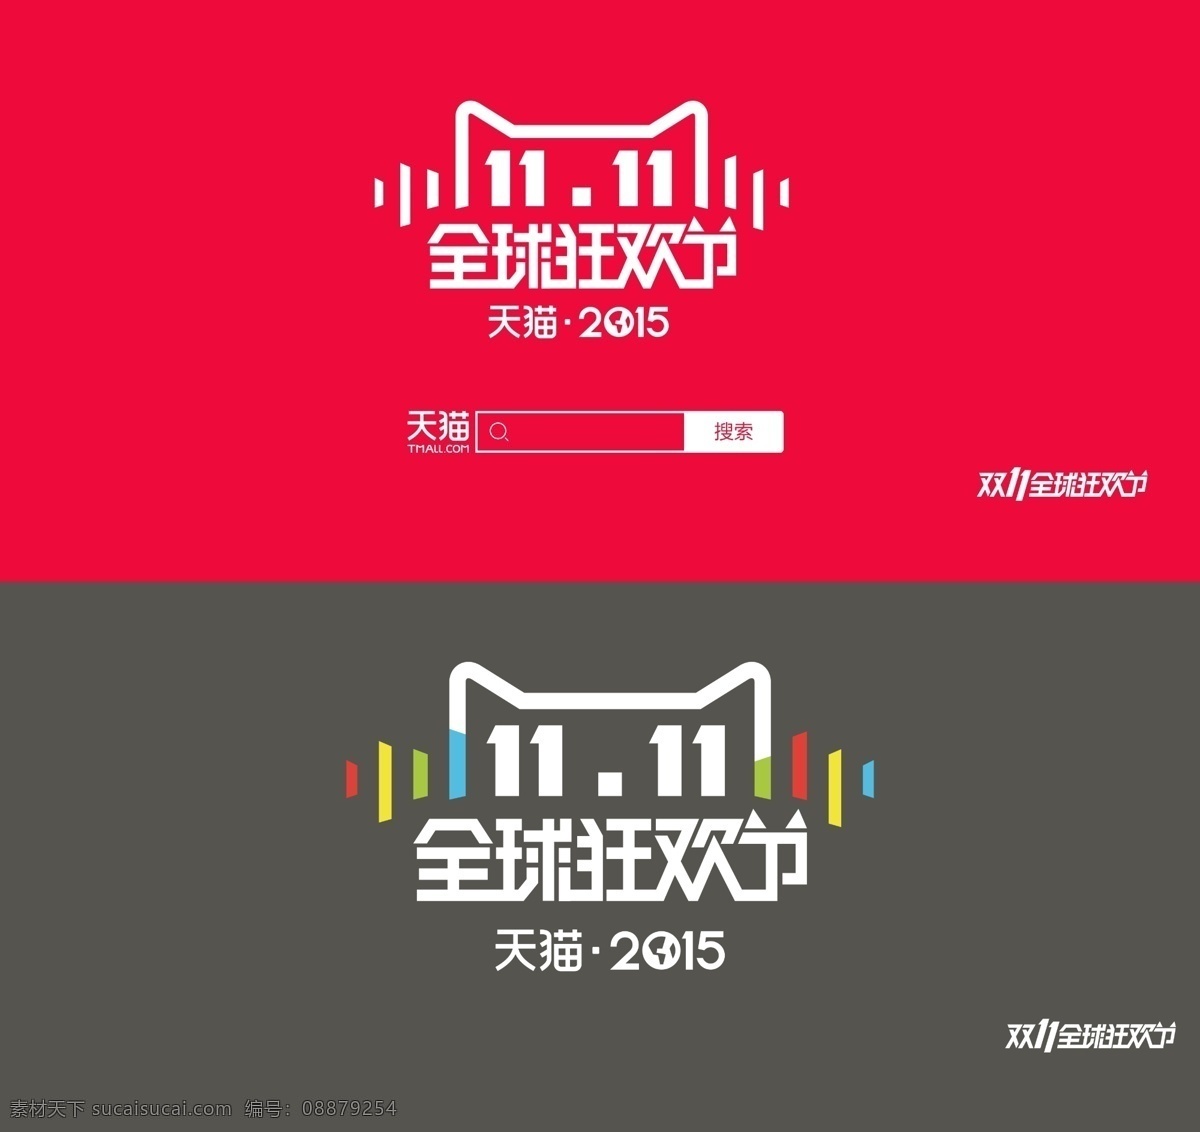 天猫 2015 双 全球 狂欢节 logo 天猫2015 双11 全球狂欢节 双十 双11来了 双十一 双11活动 光棍节 1111设计 红色